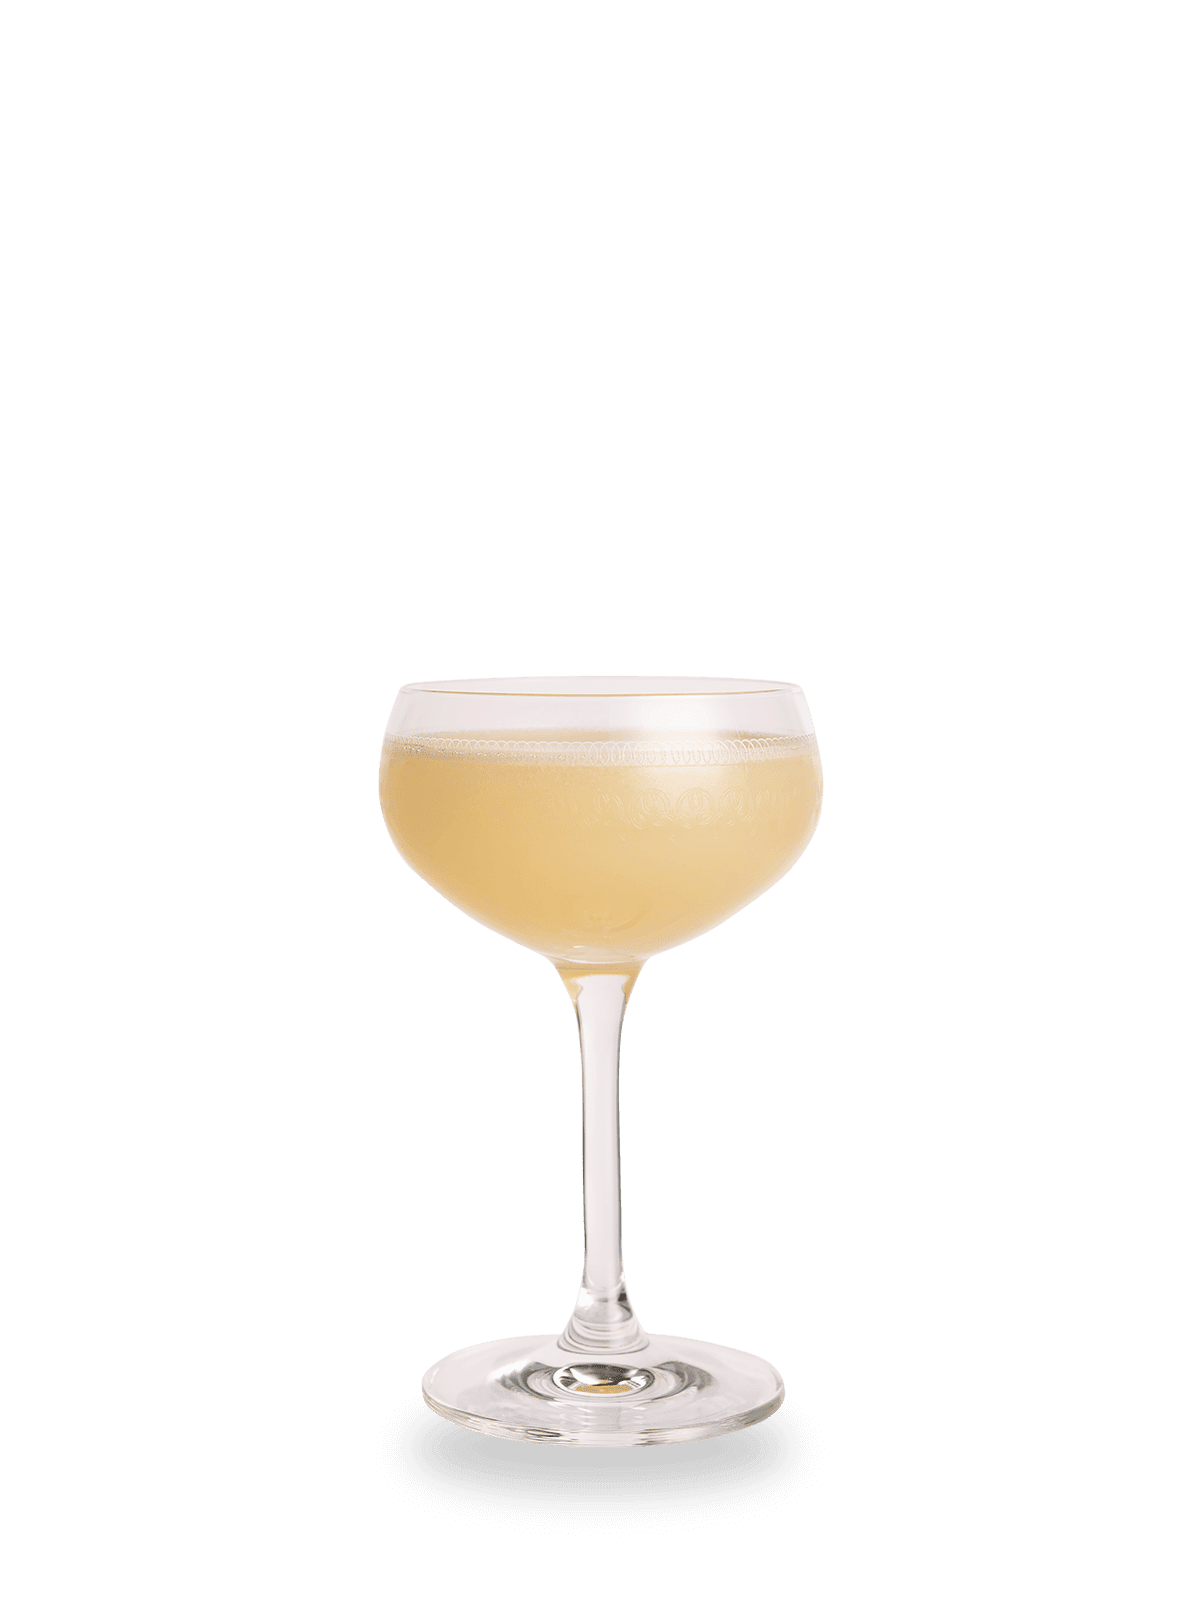 20th Century Cocktail Rezept mit Gin und Creme de Cacao